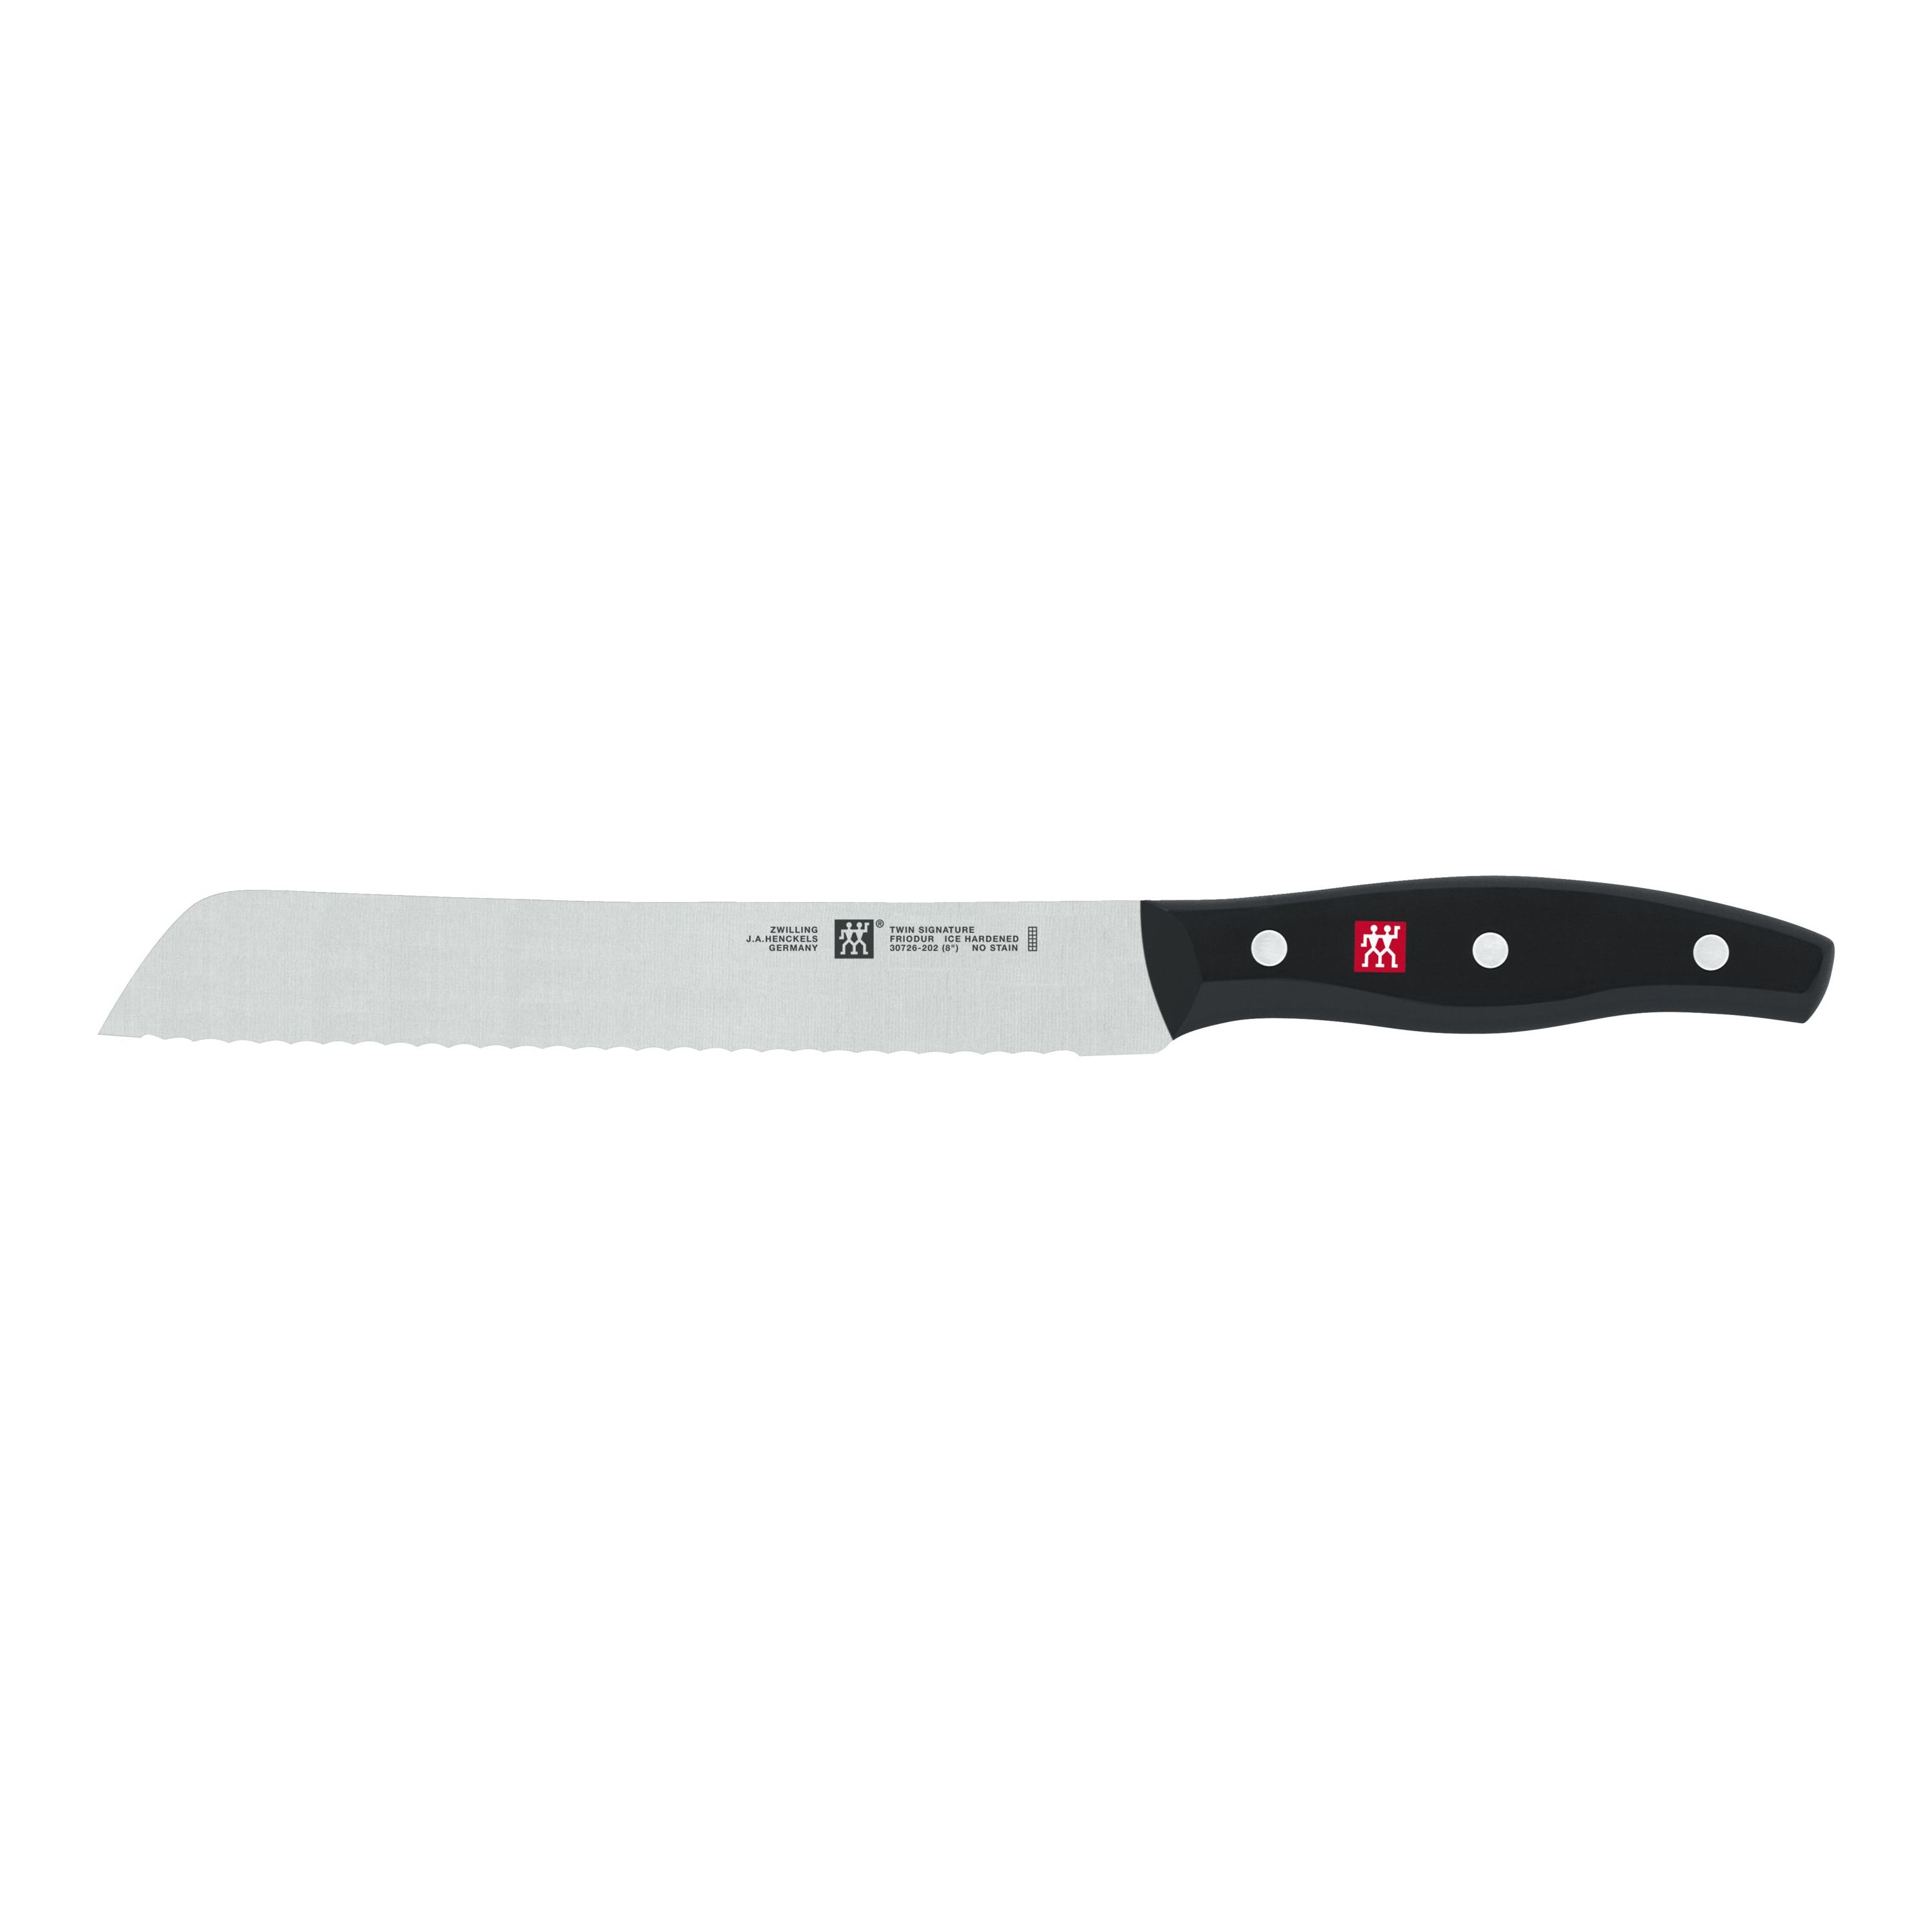 Bfonder 11pcs Kitchen Knife Set Knife Block Set with Sharpener Black, –  bfonder